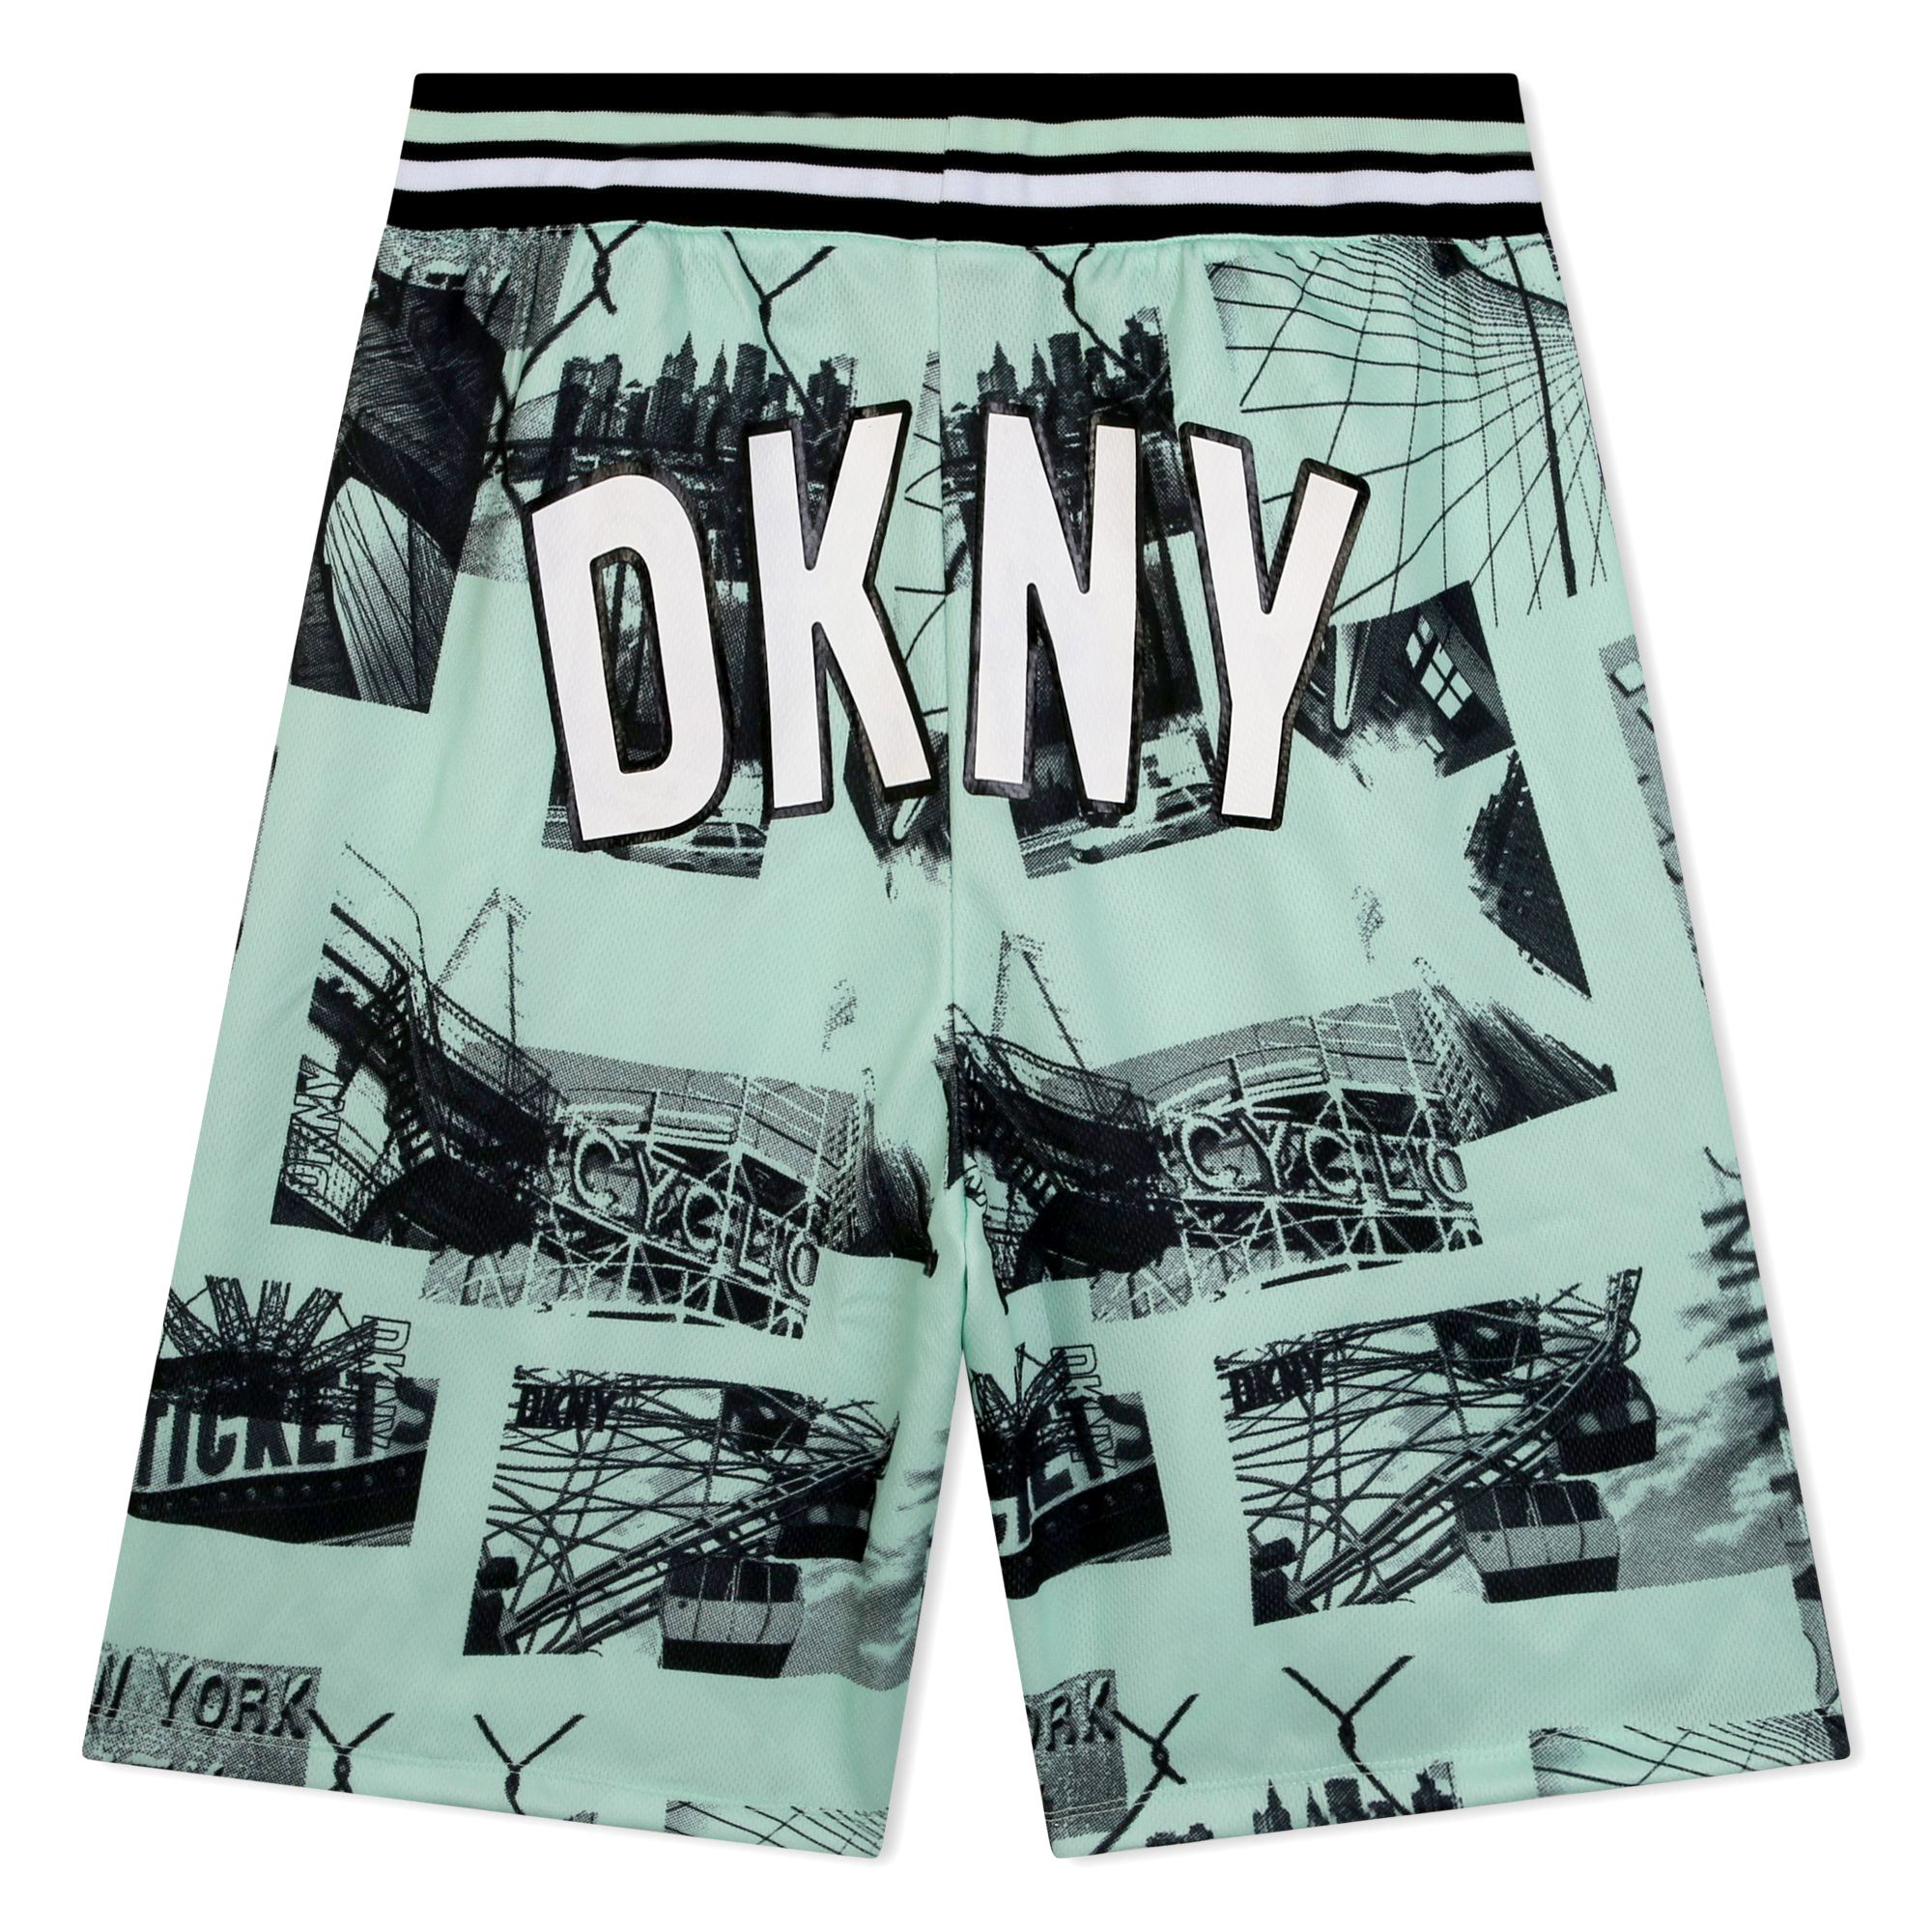 Shorts aus Mesh mit Print DKNY Für JUNGE